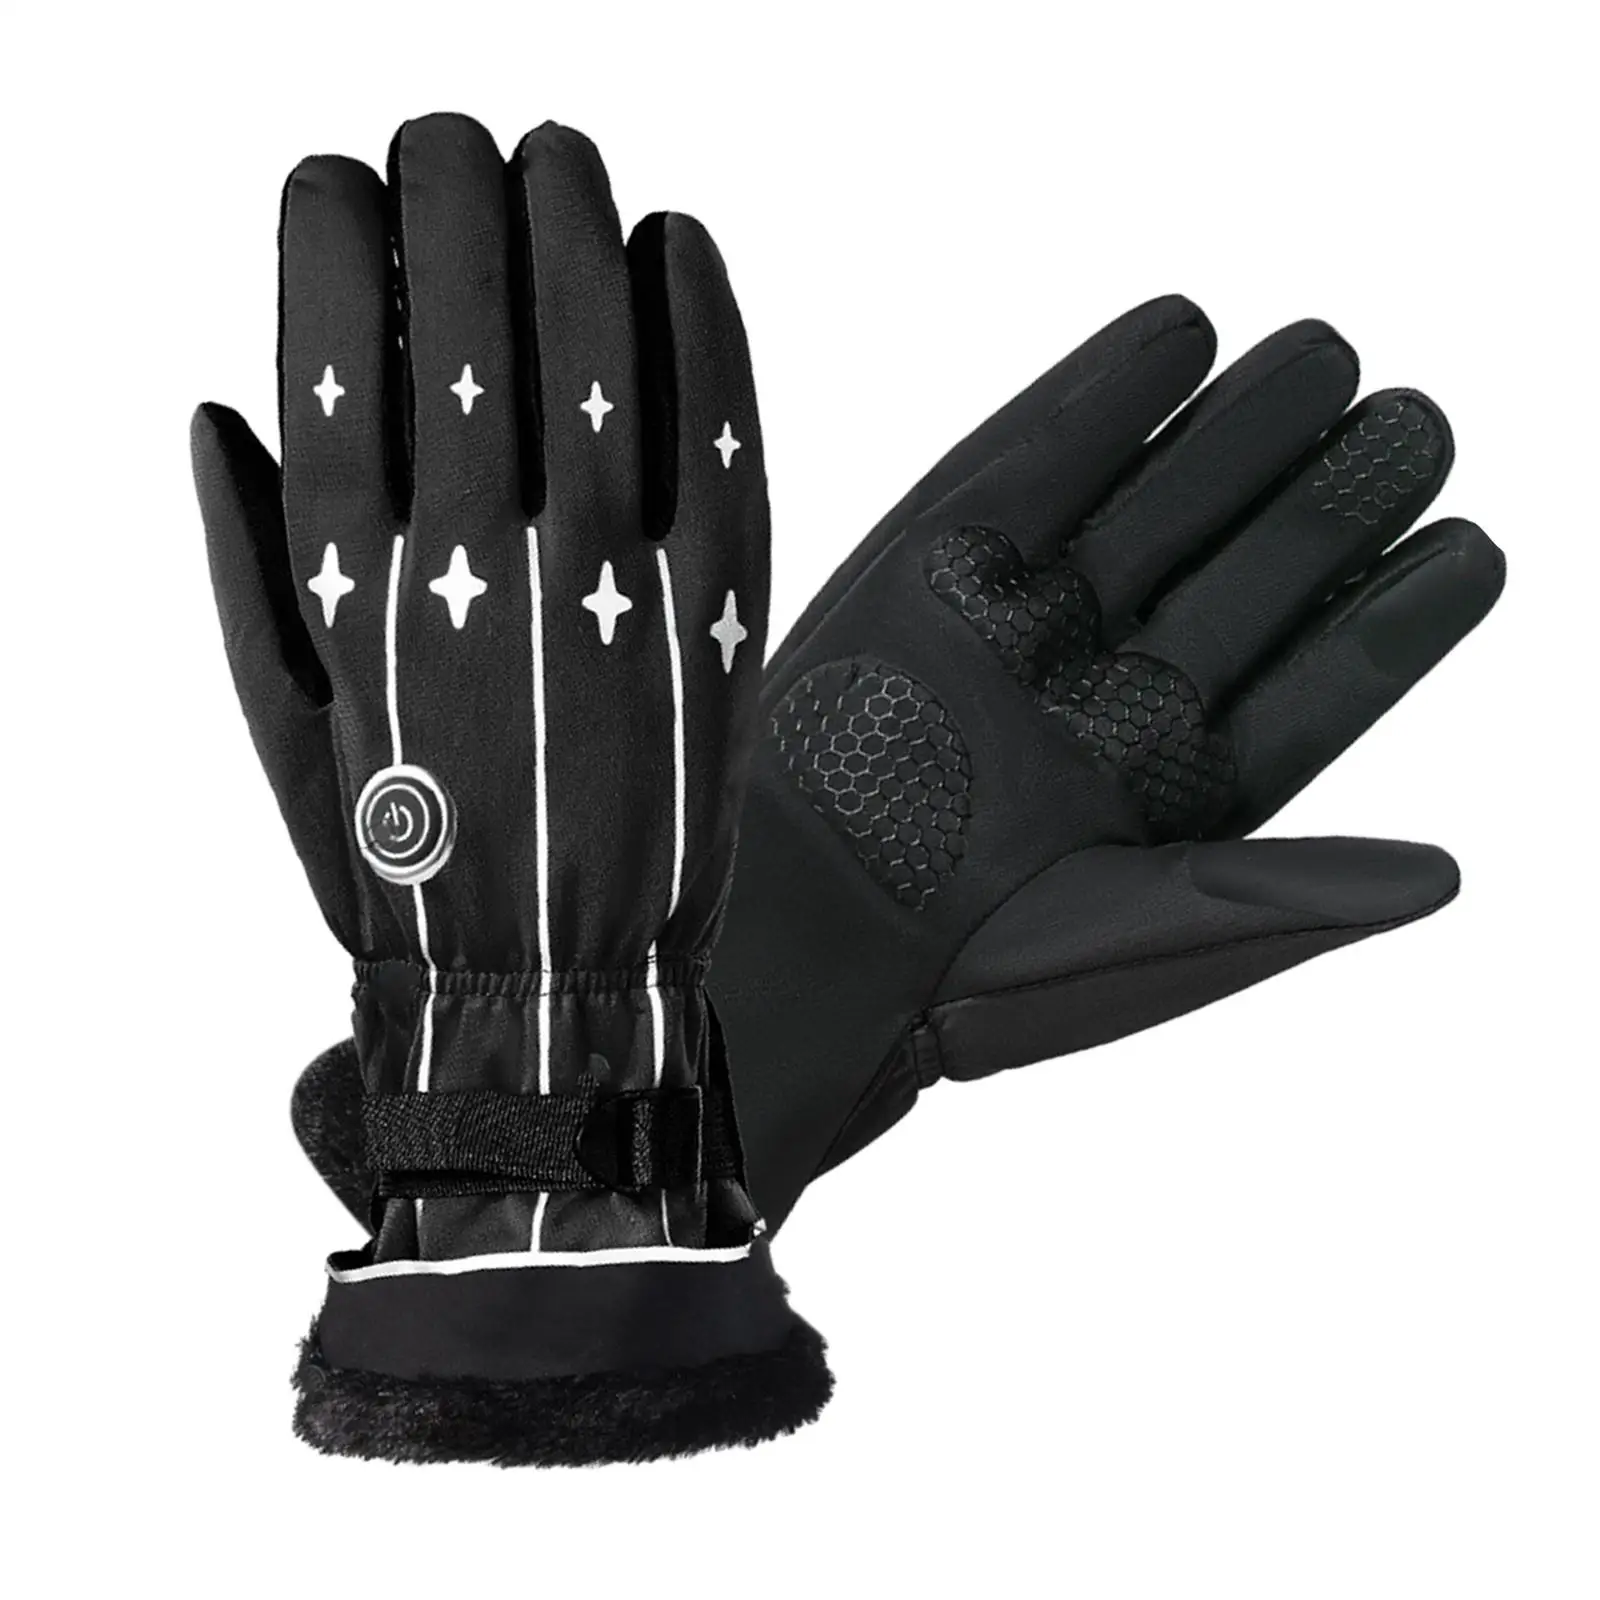 Electric Battery Heated Gloves Touch Screen Warm Adjustable Men Women Waterproof